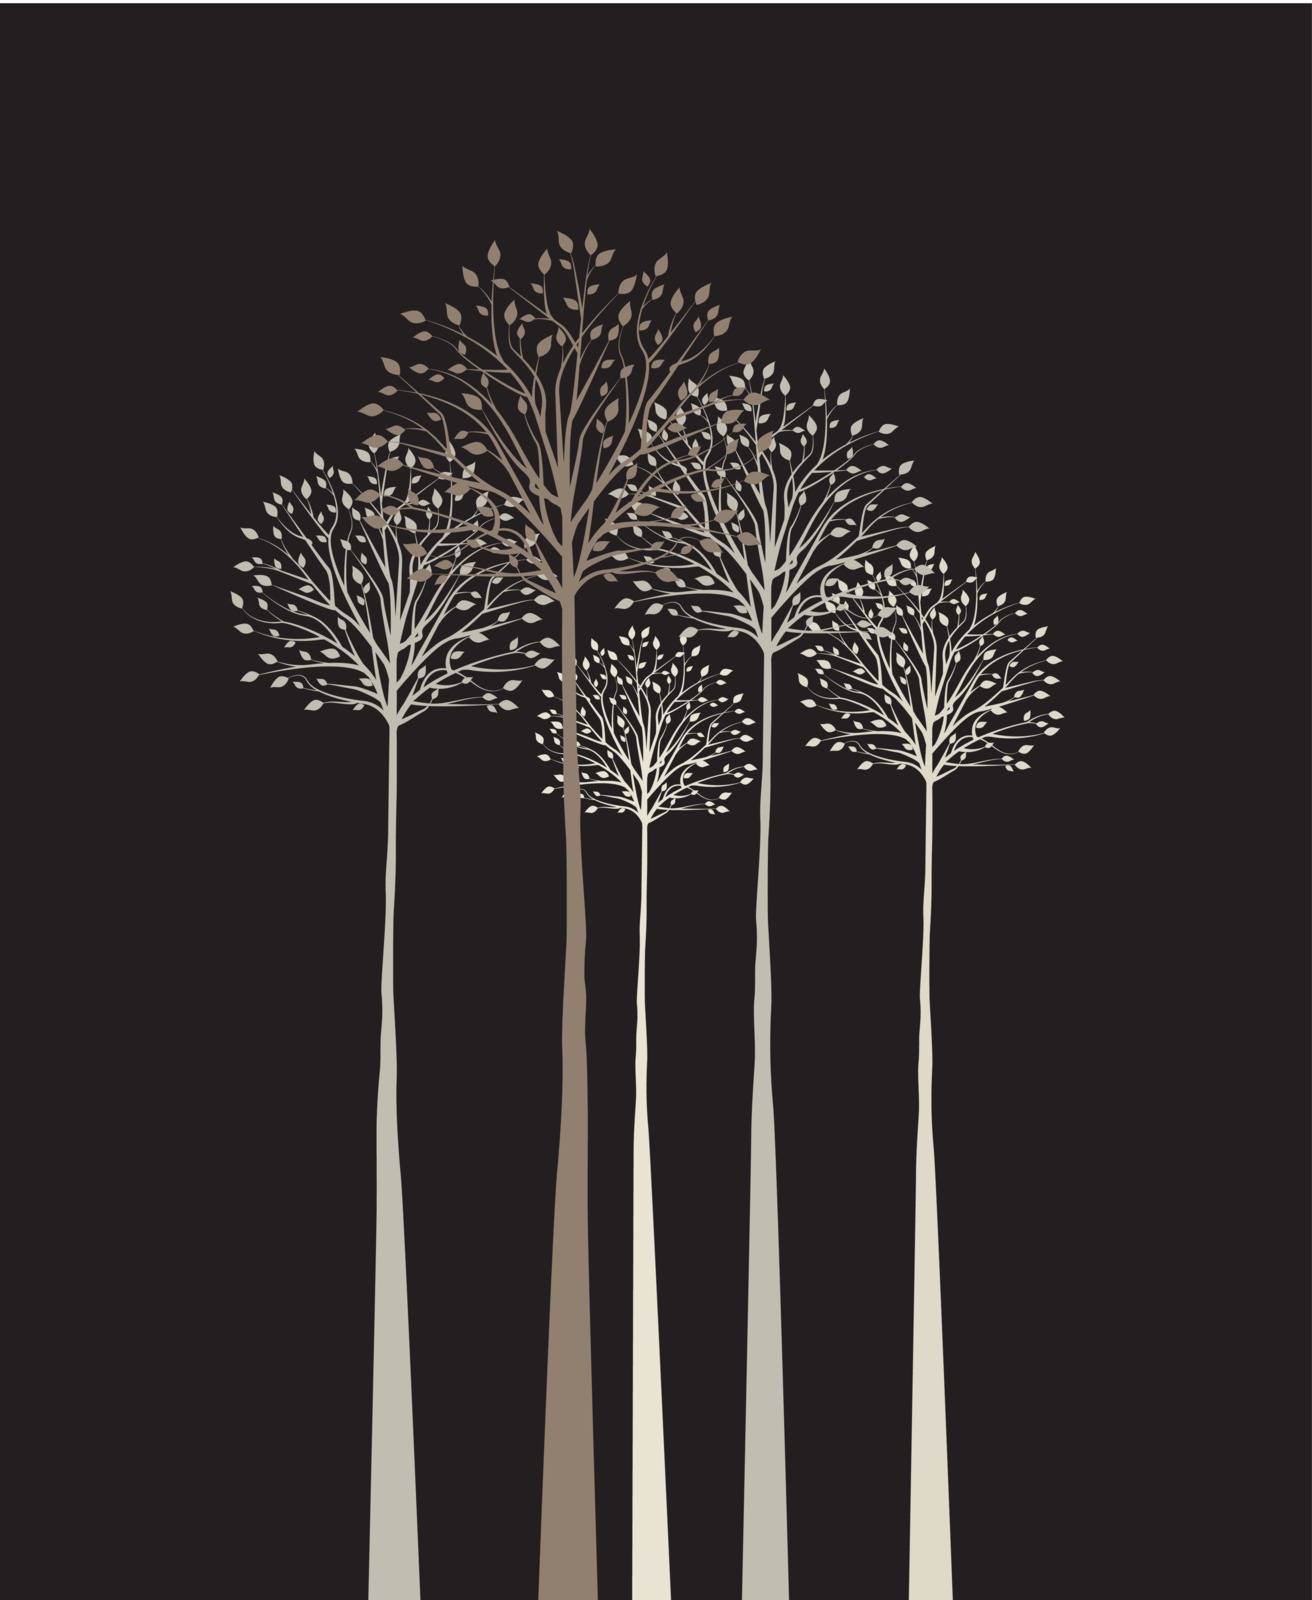 trees by odina222